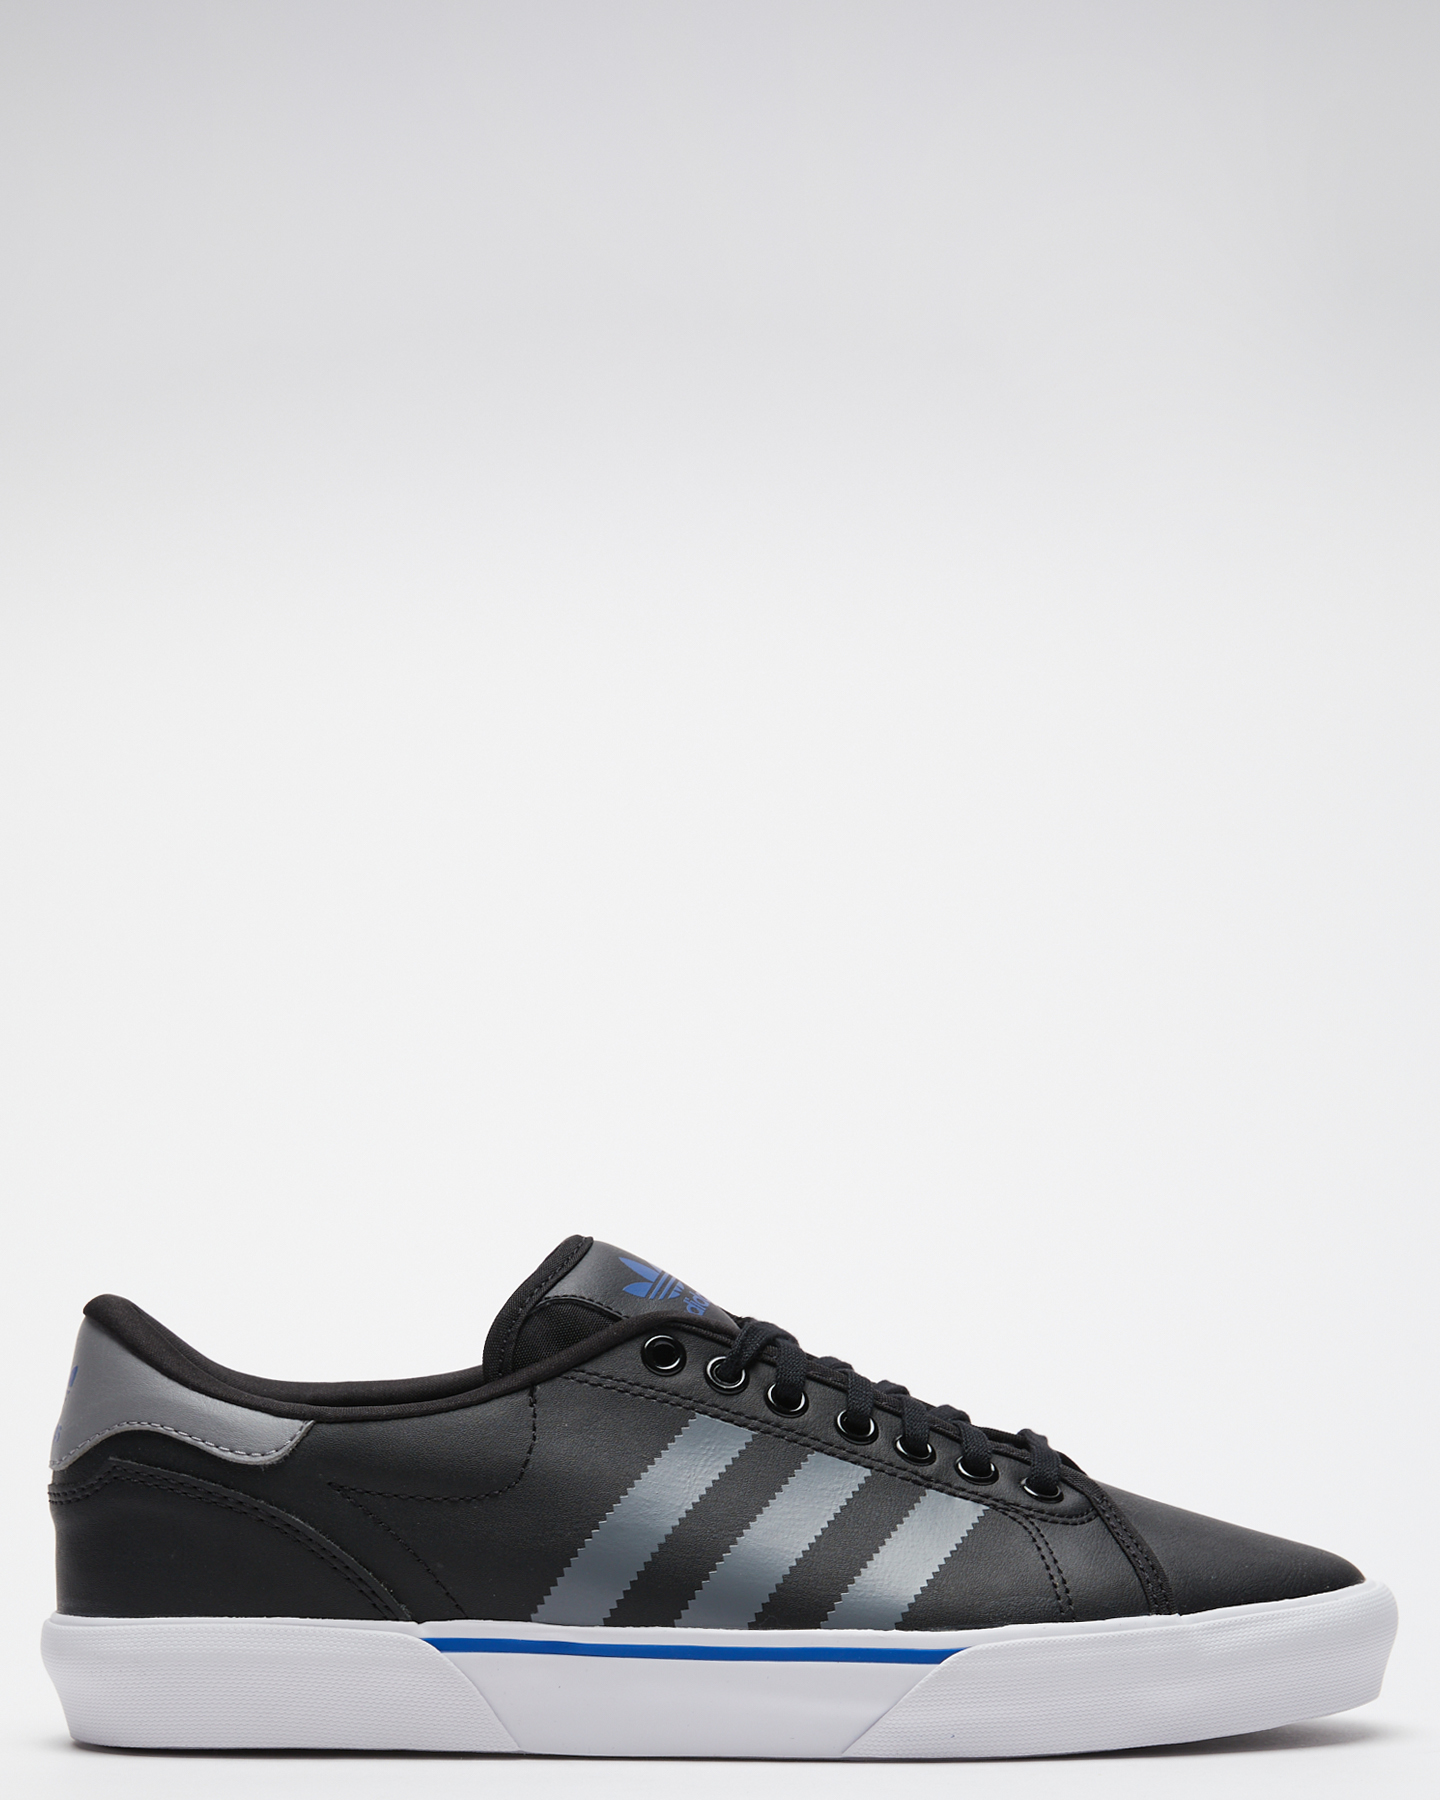 Adidas Abaca Shoe Black Grey Blue - Black Grey Blue | SurfStitch